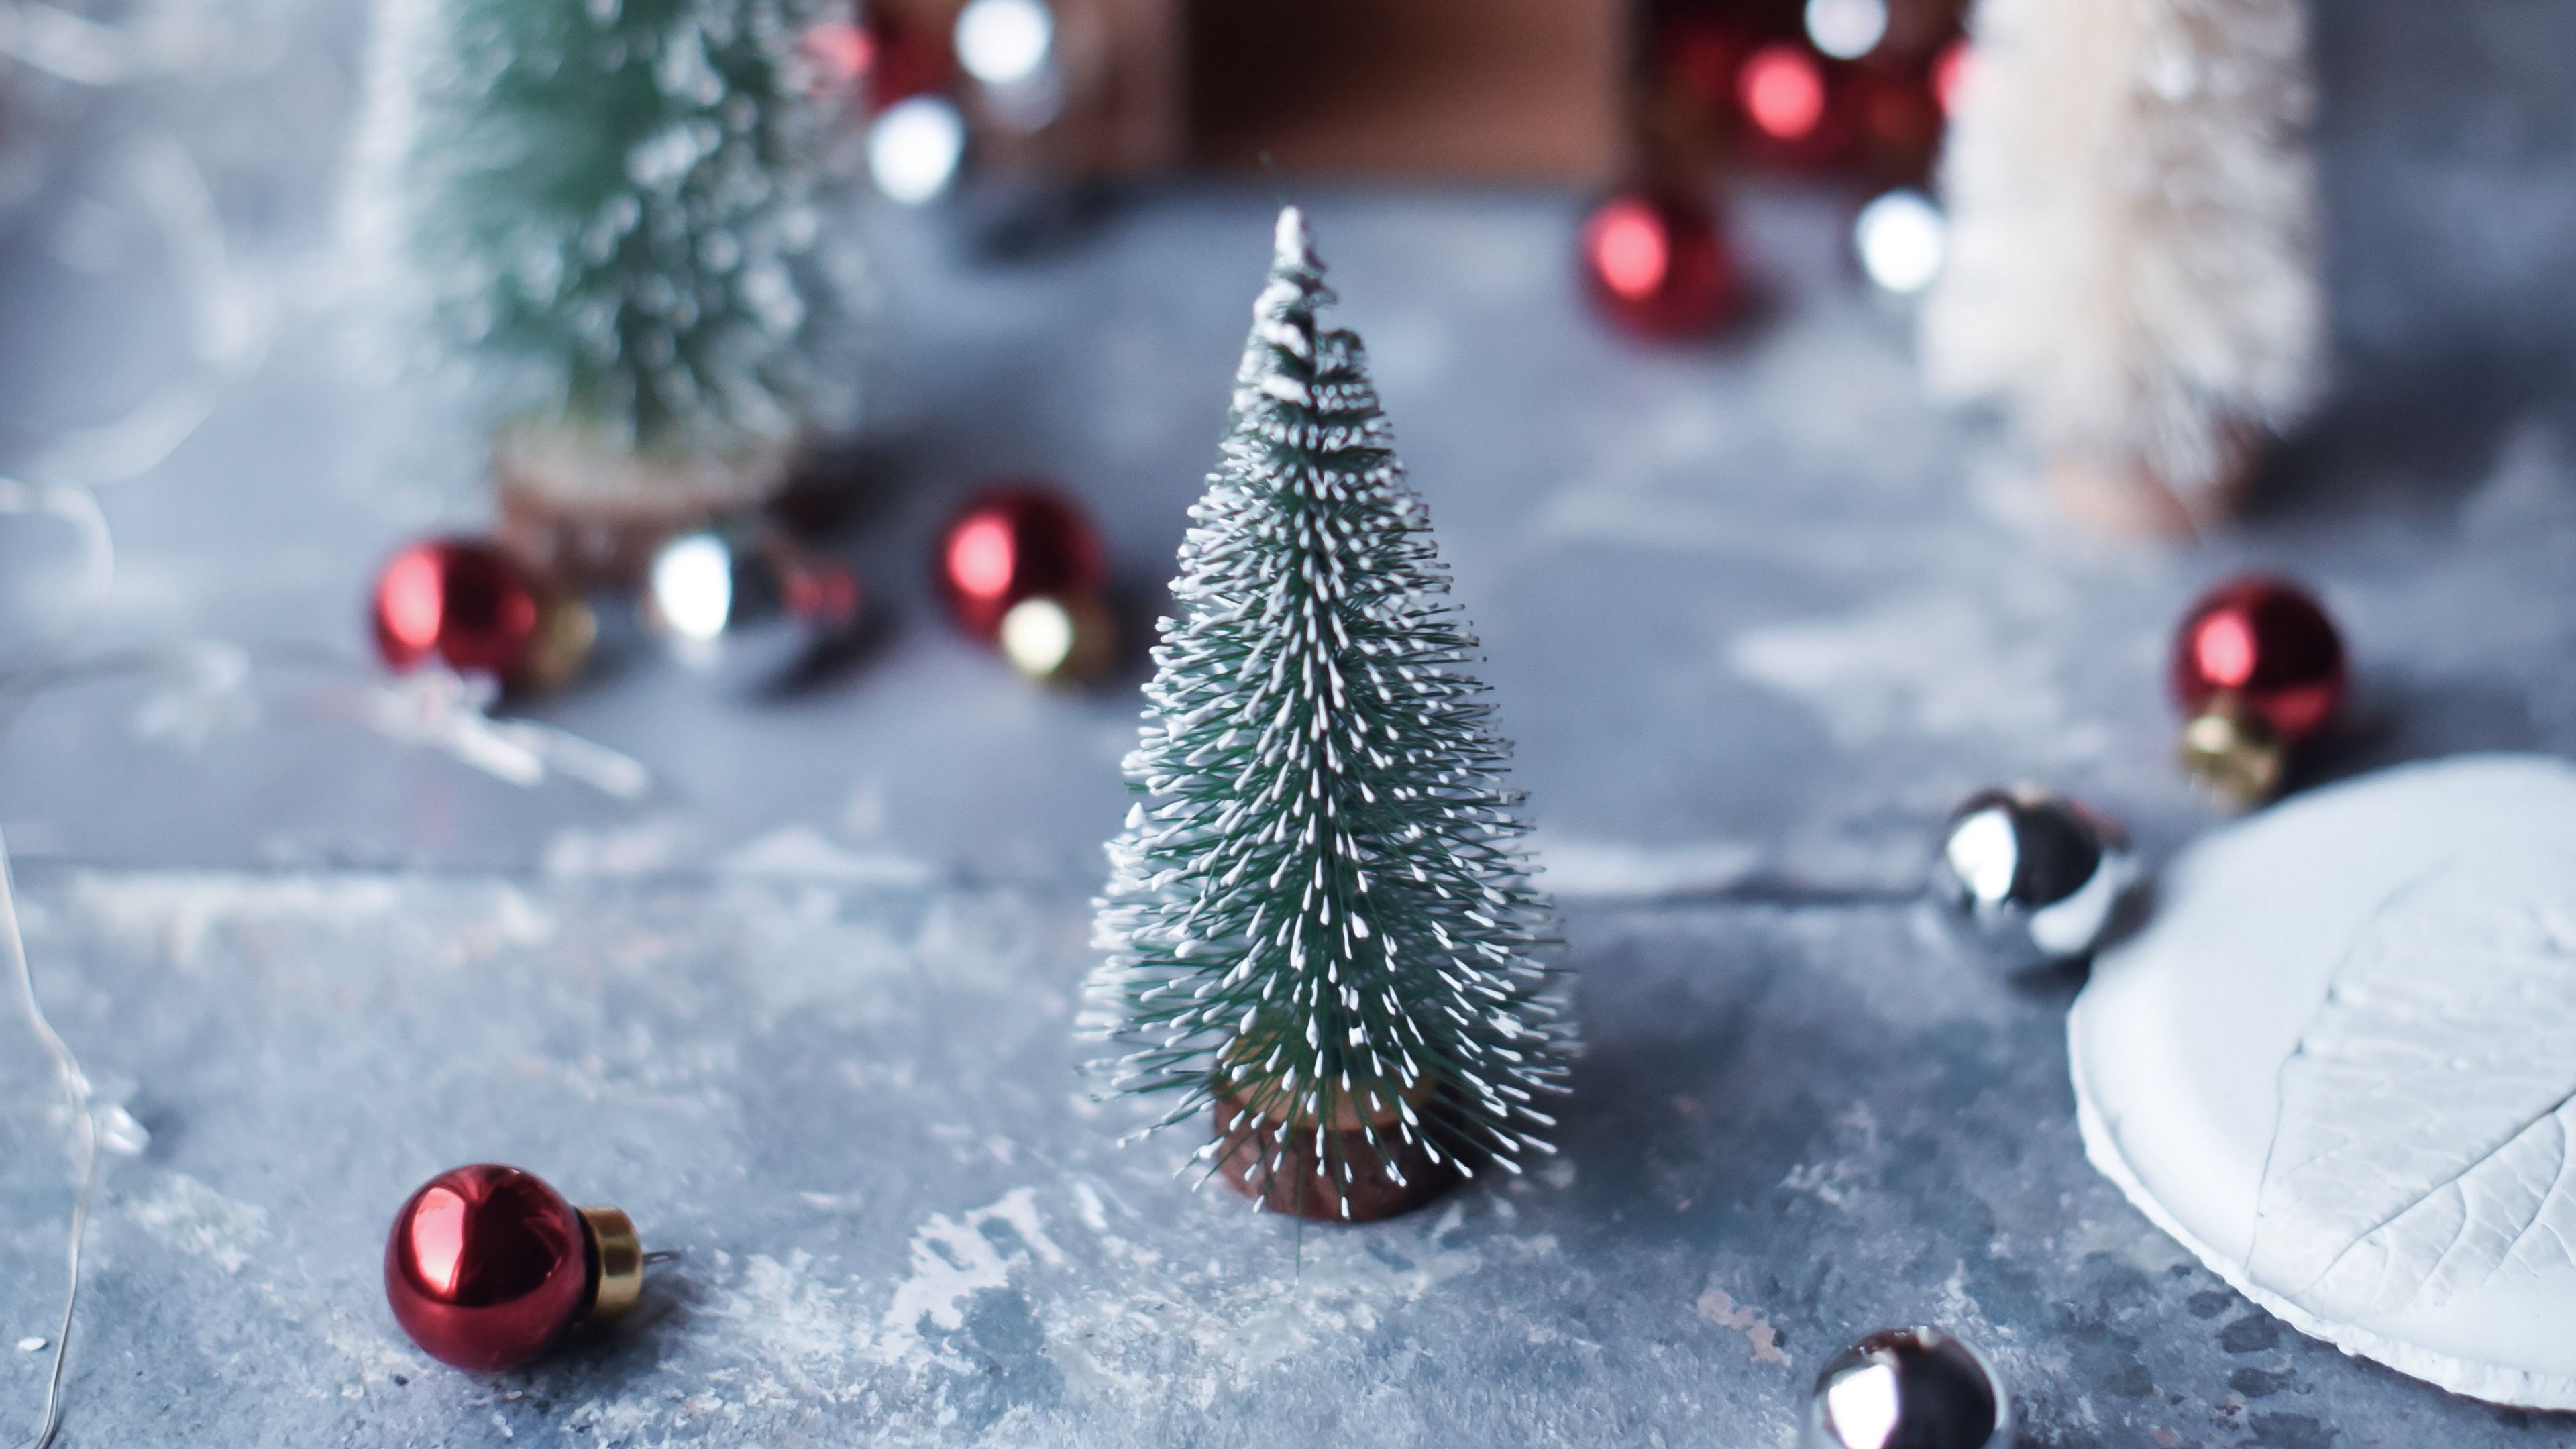 Một mùa Giáng Sinh thật trọn vẹn không thể thiếu cây thông Noel tuyệt đẹp của bạn. Nhanh chóng tải về bức ảnh nền trang trí cây thông, để chúc mừng và đón nhận một mùa lễ trọng đại thật tràn đầy ý nghĩa.